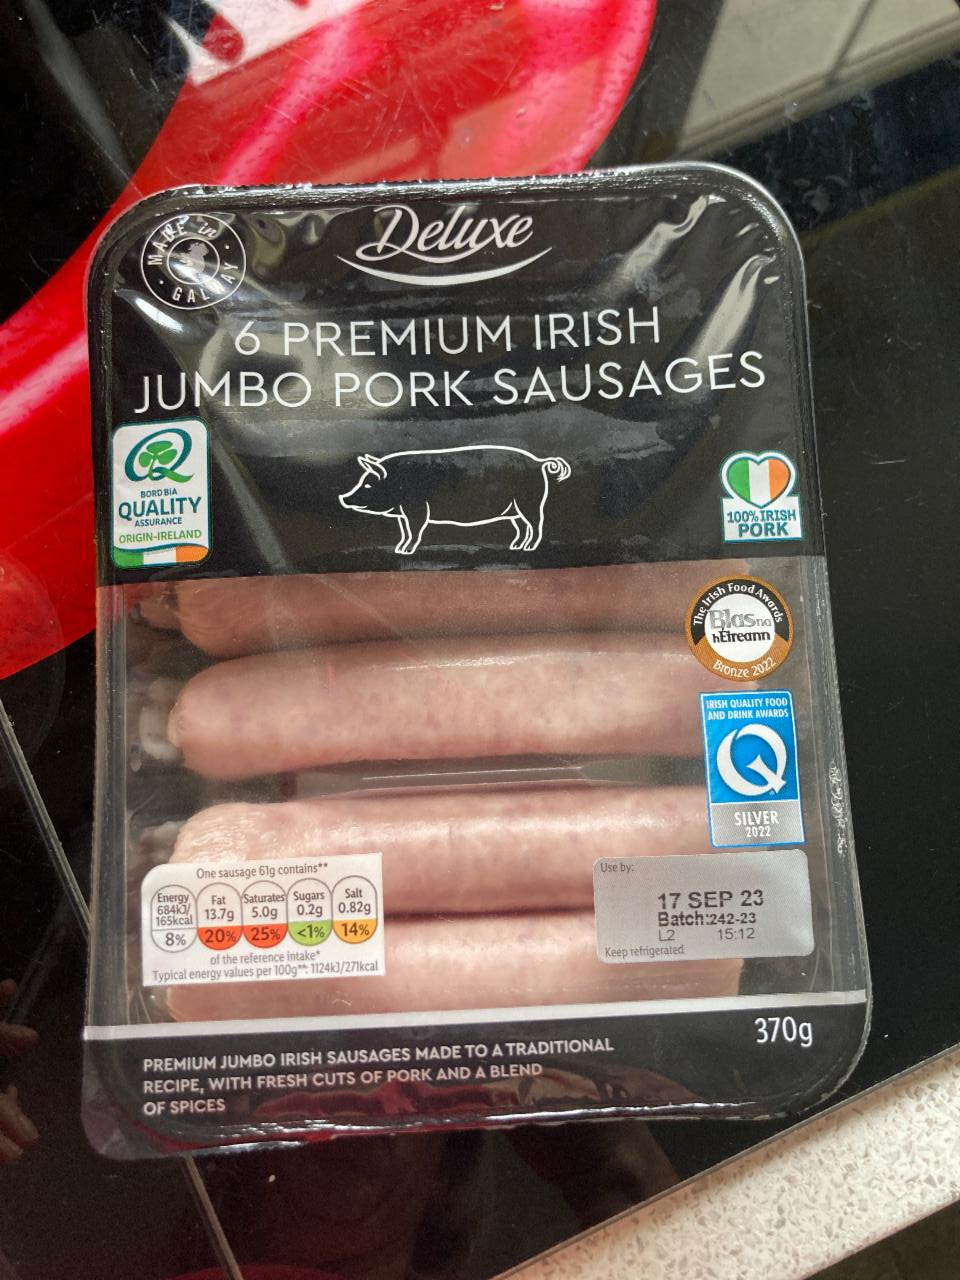 Fotografie - 6 Premium Irish jumbo pork sausages Deluxe